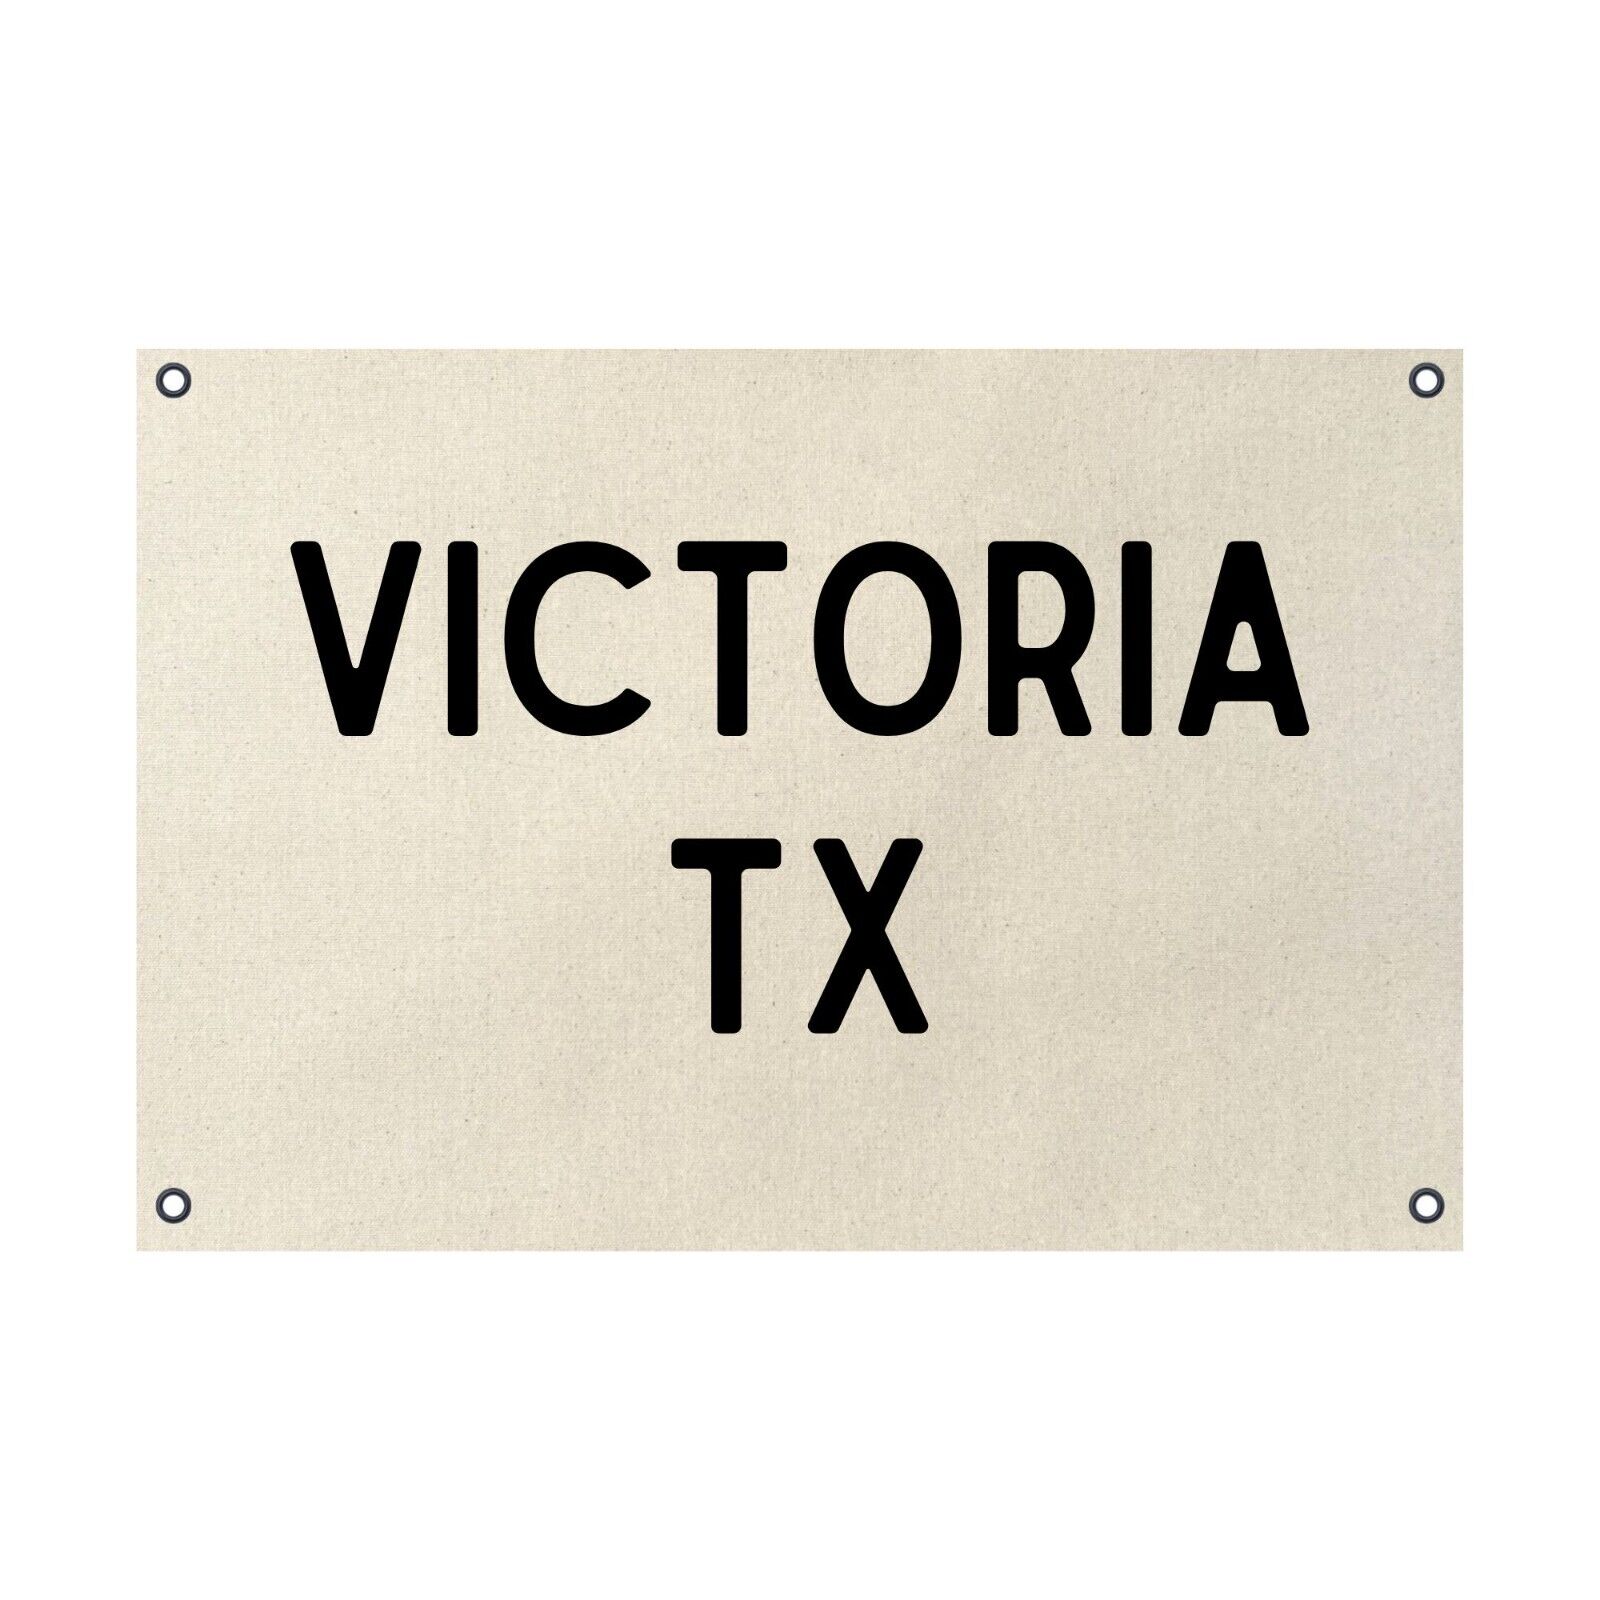 Victoria Texas TX Natural Cotton Canvas Poster 24x36